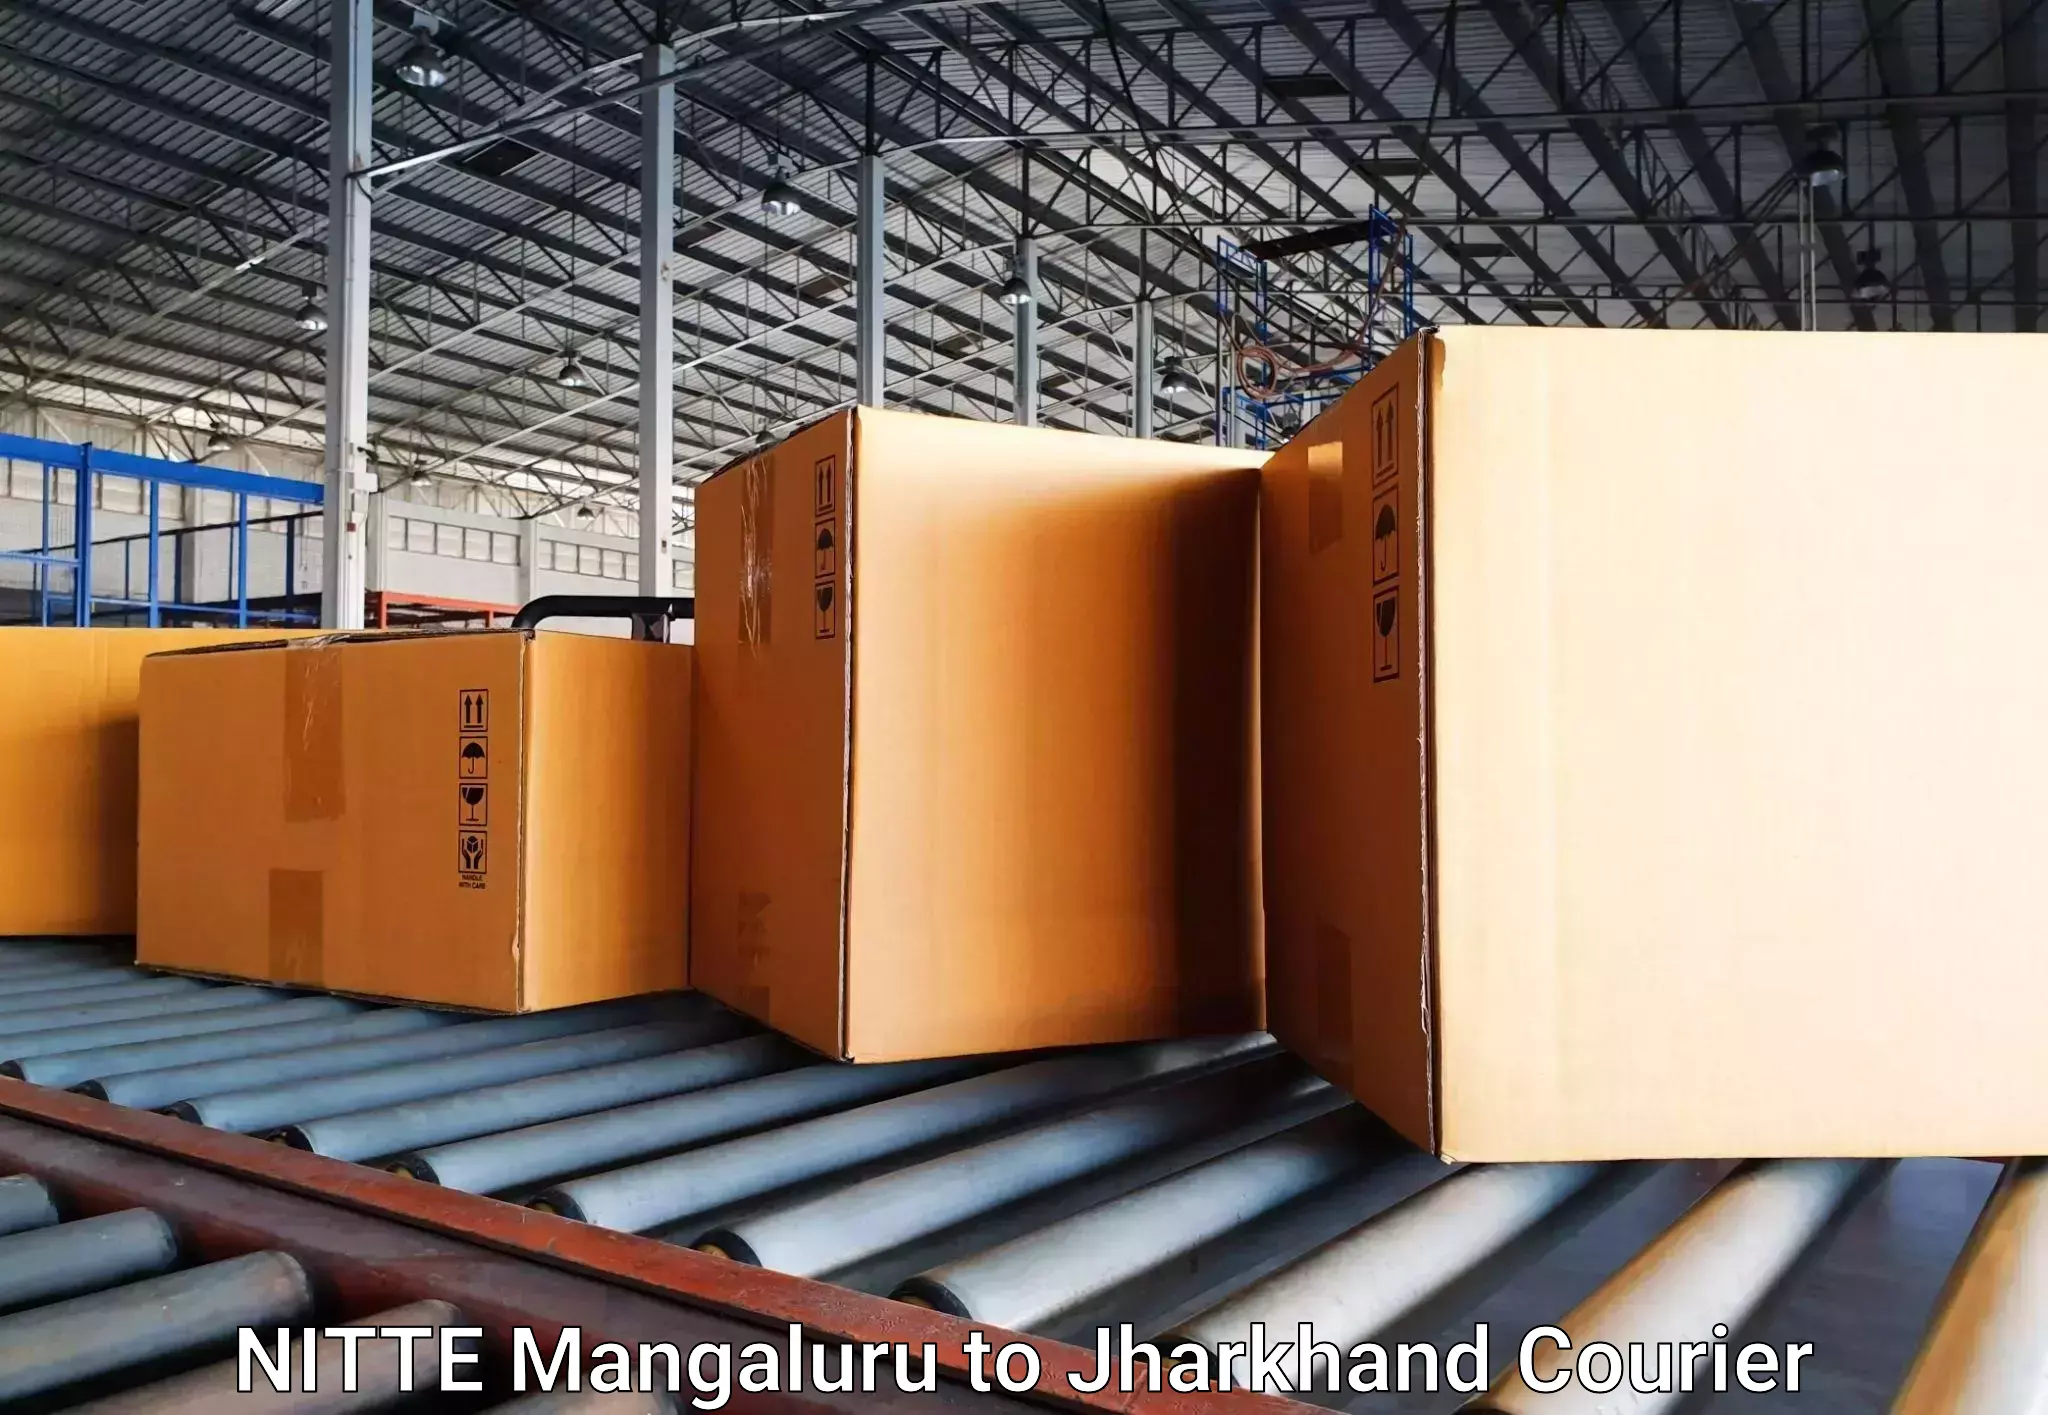 Baggage transport technology NITTE Mangaluru to Hariharganj